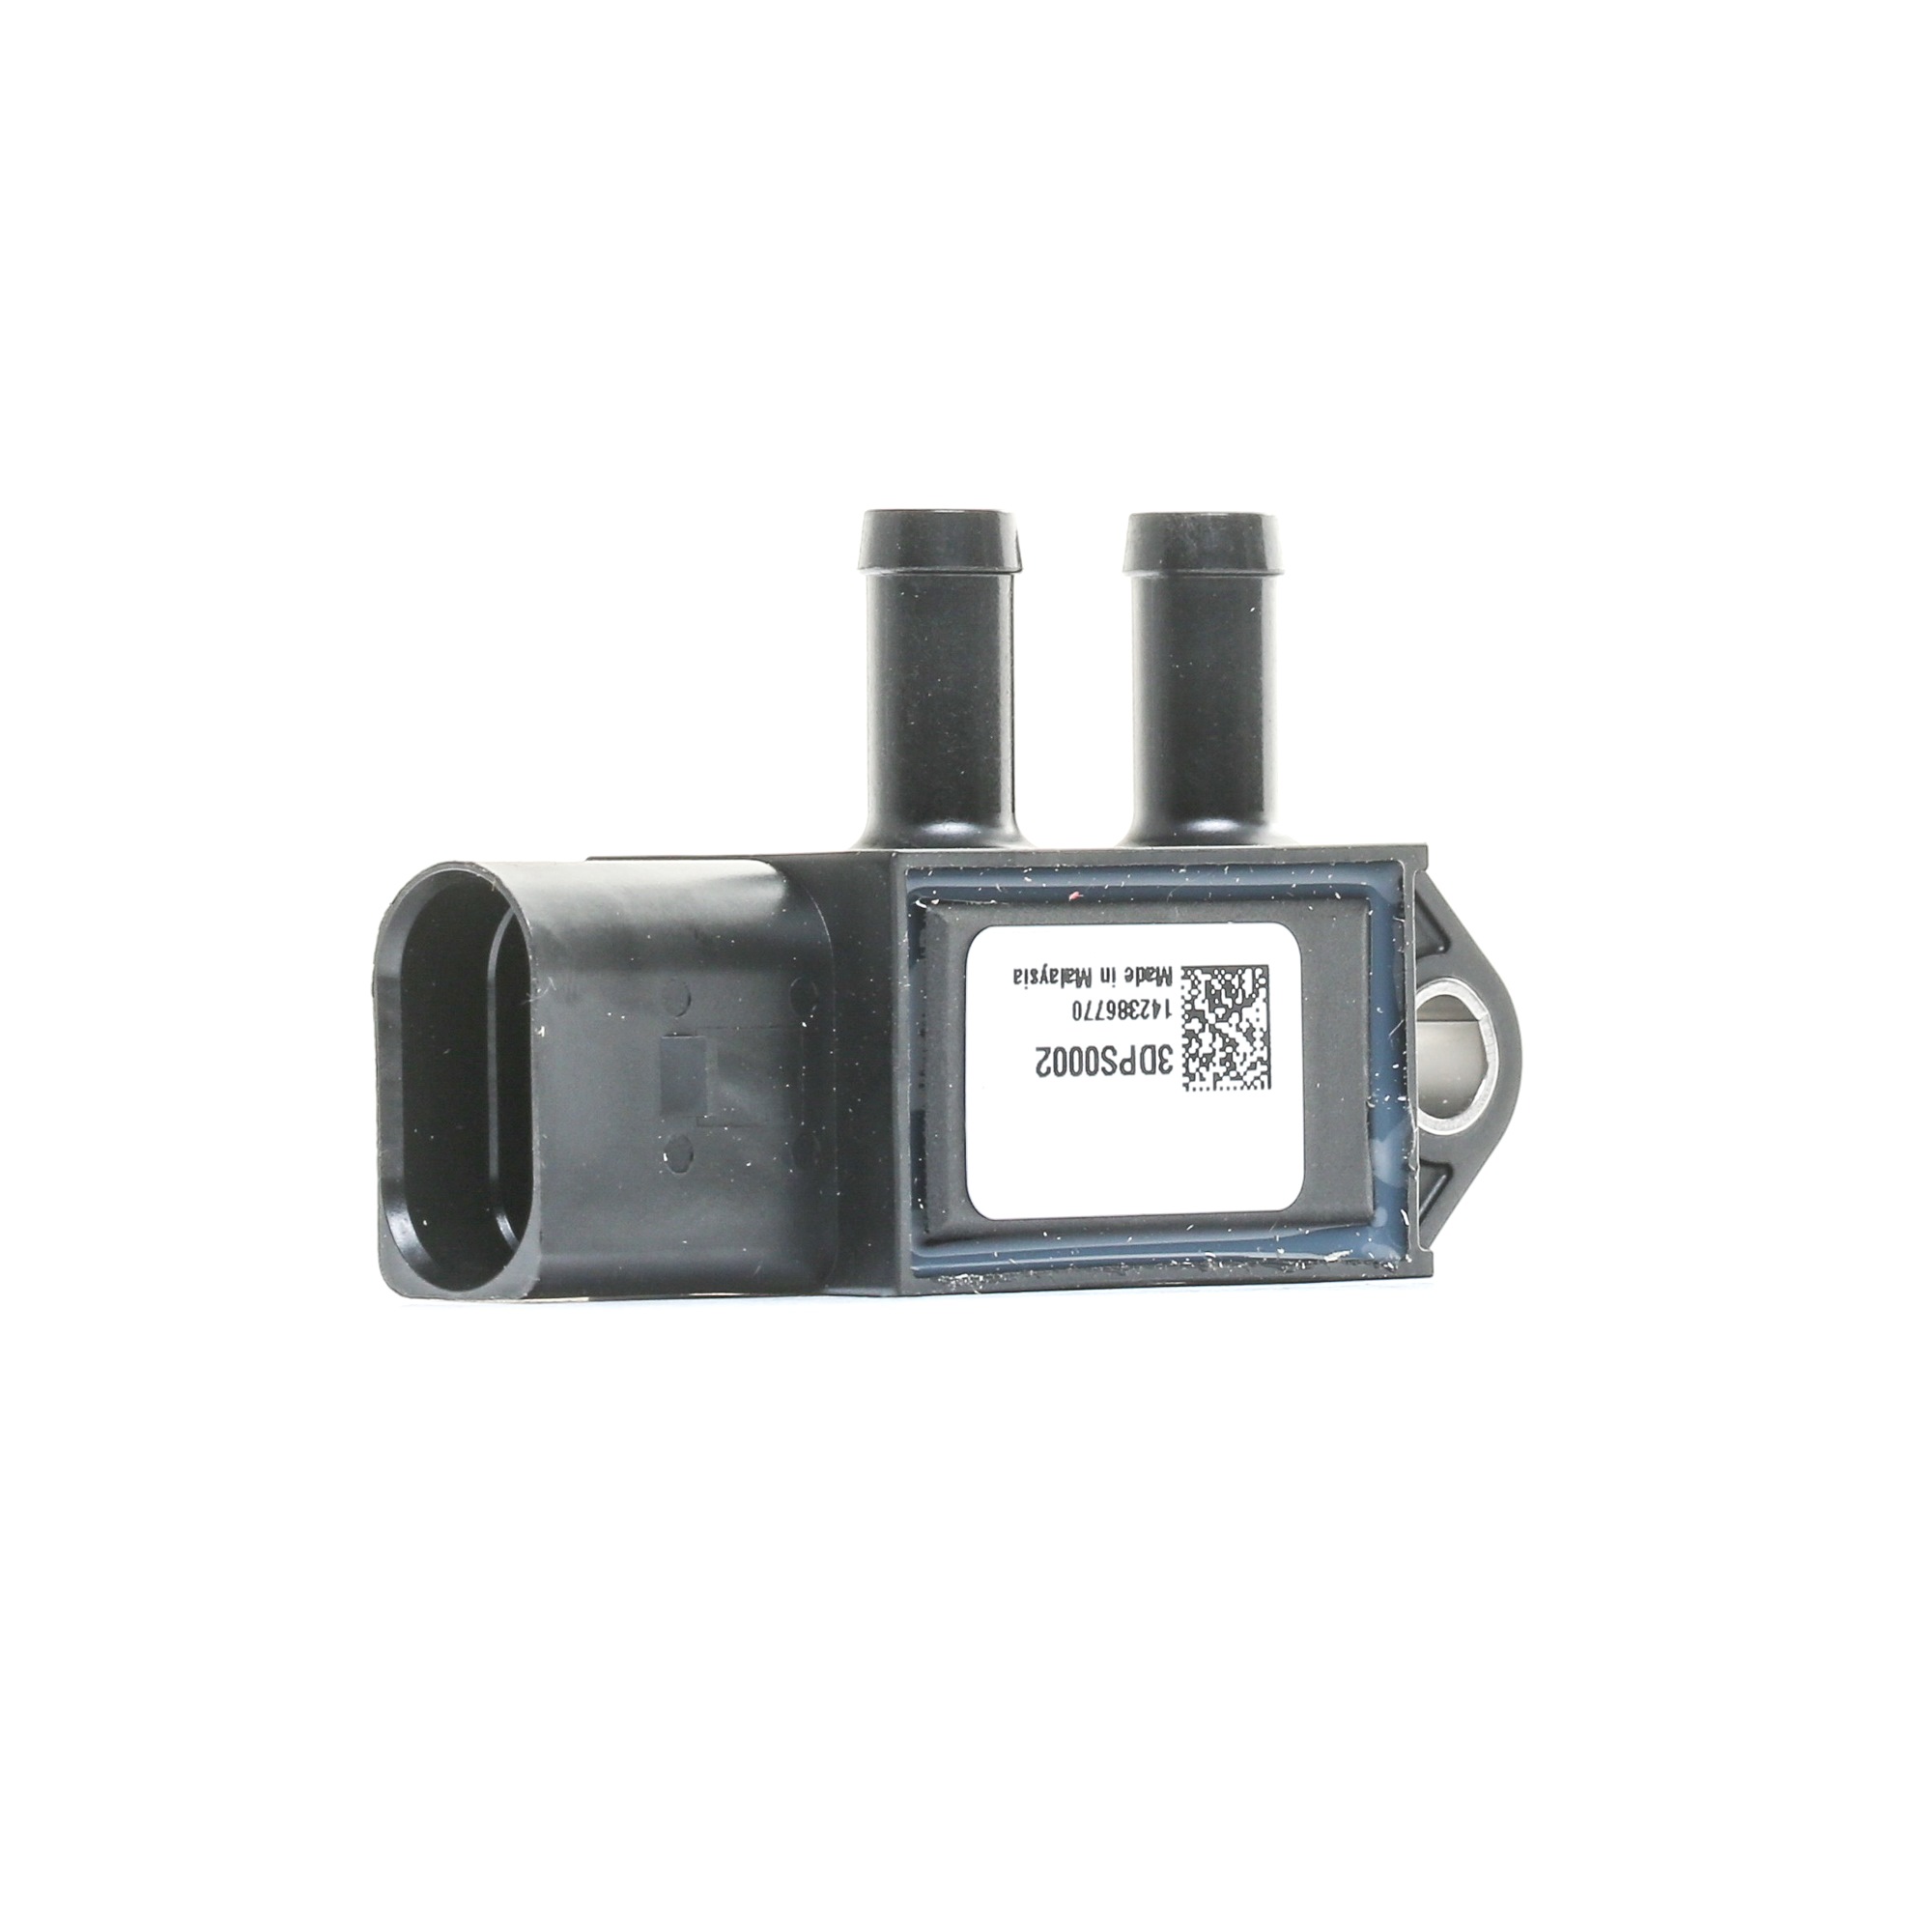 FEBI BILSTEIN Sensor, exhaust pressure 100853 Volkswagen CADDY 2000